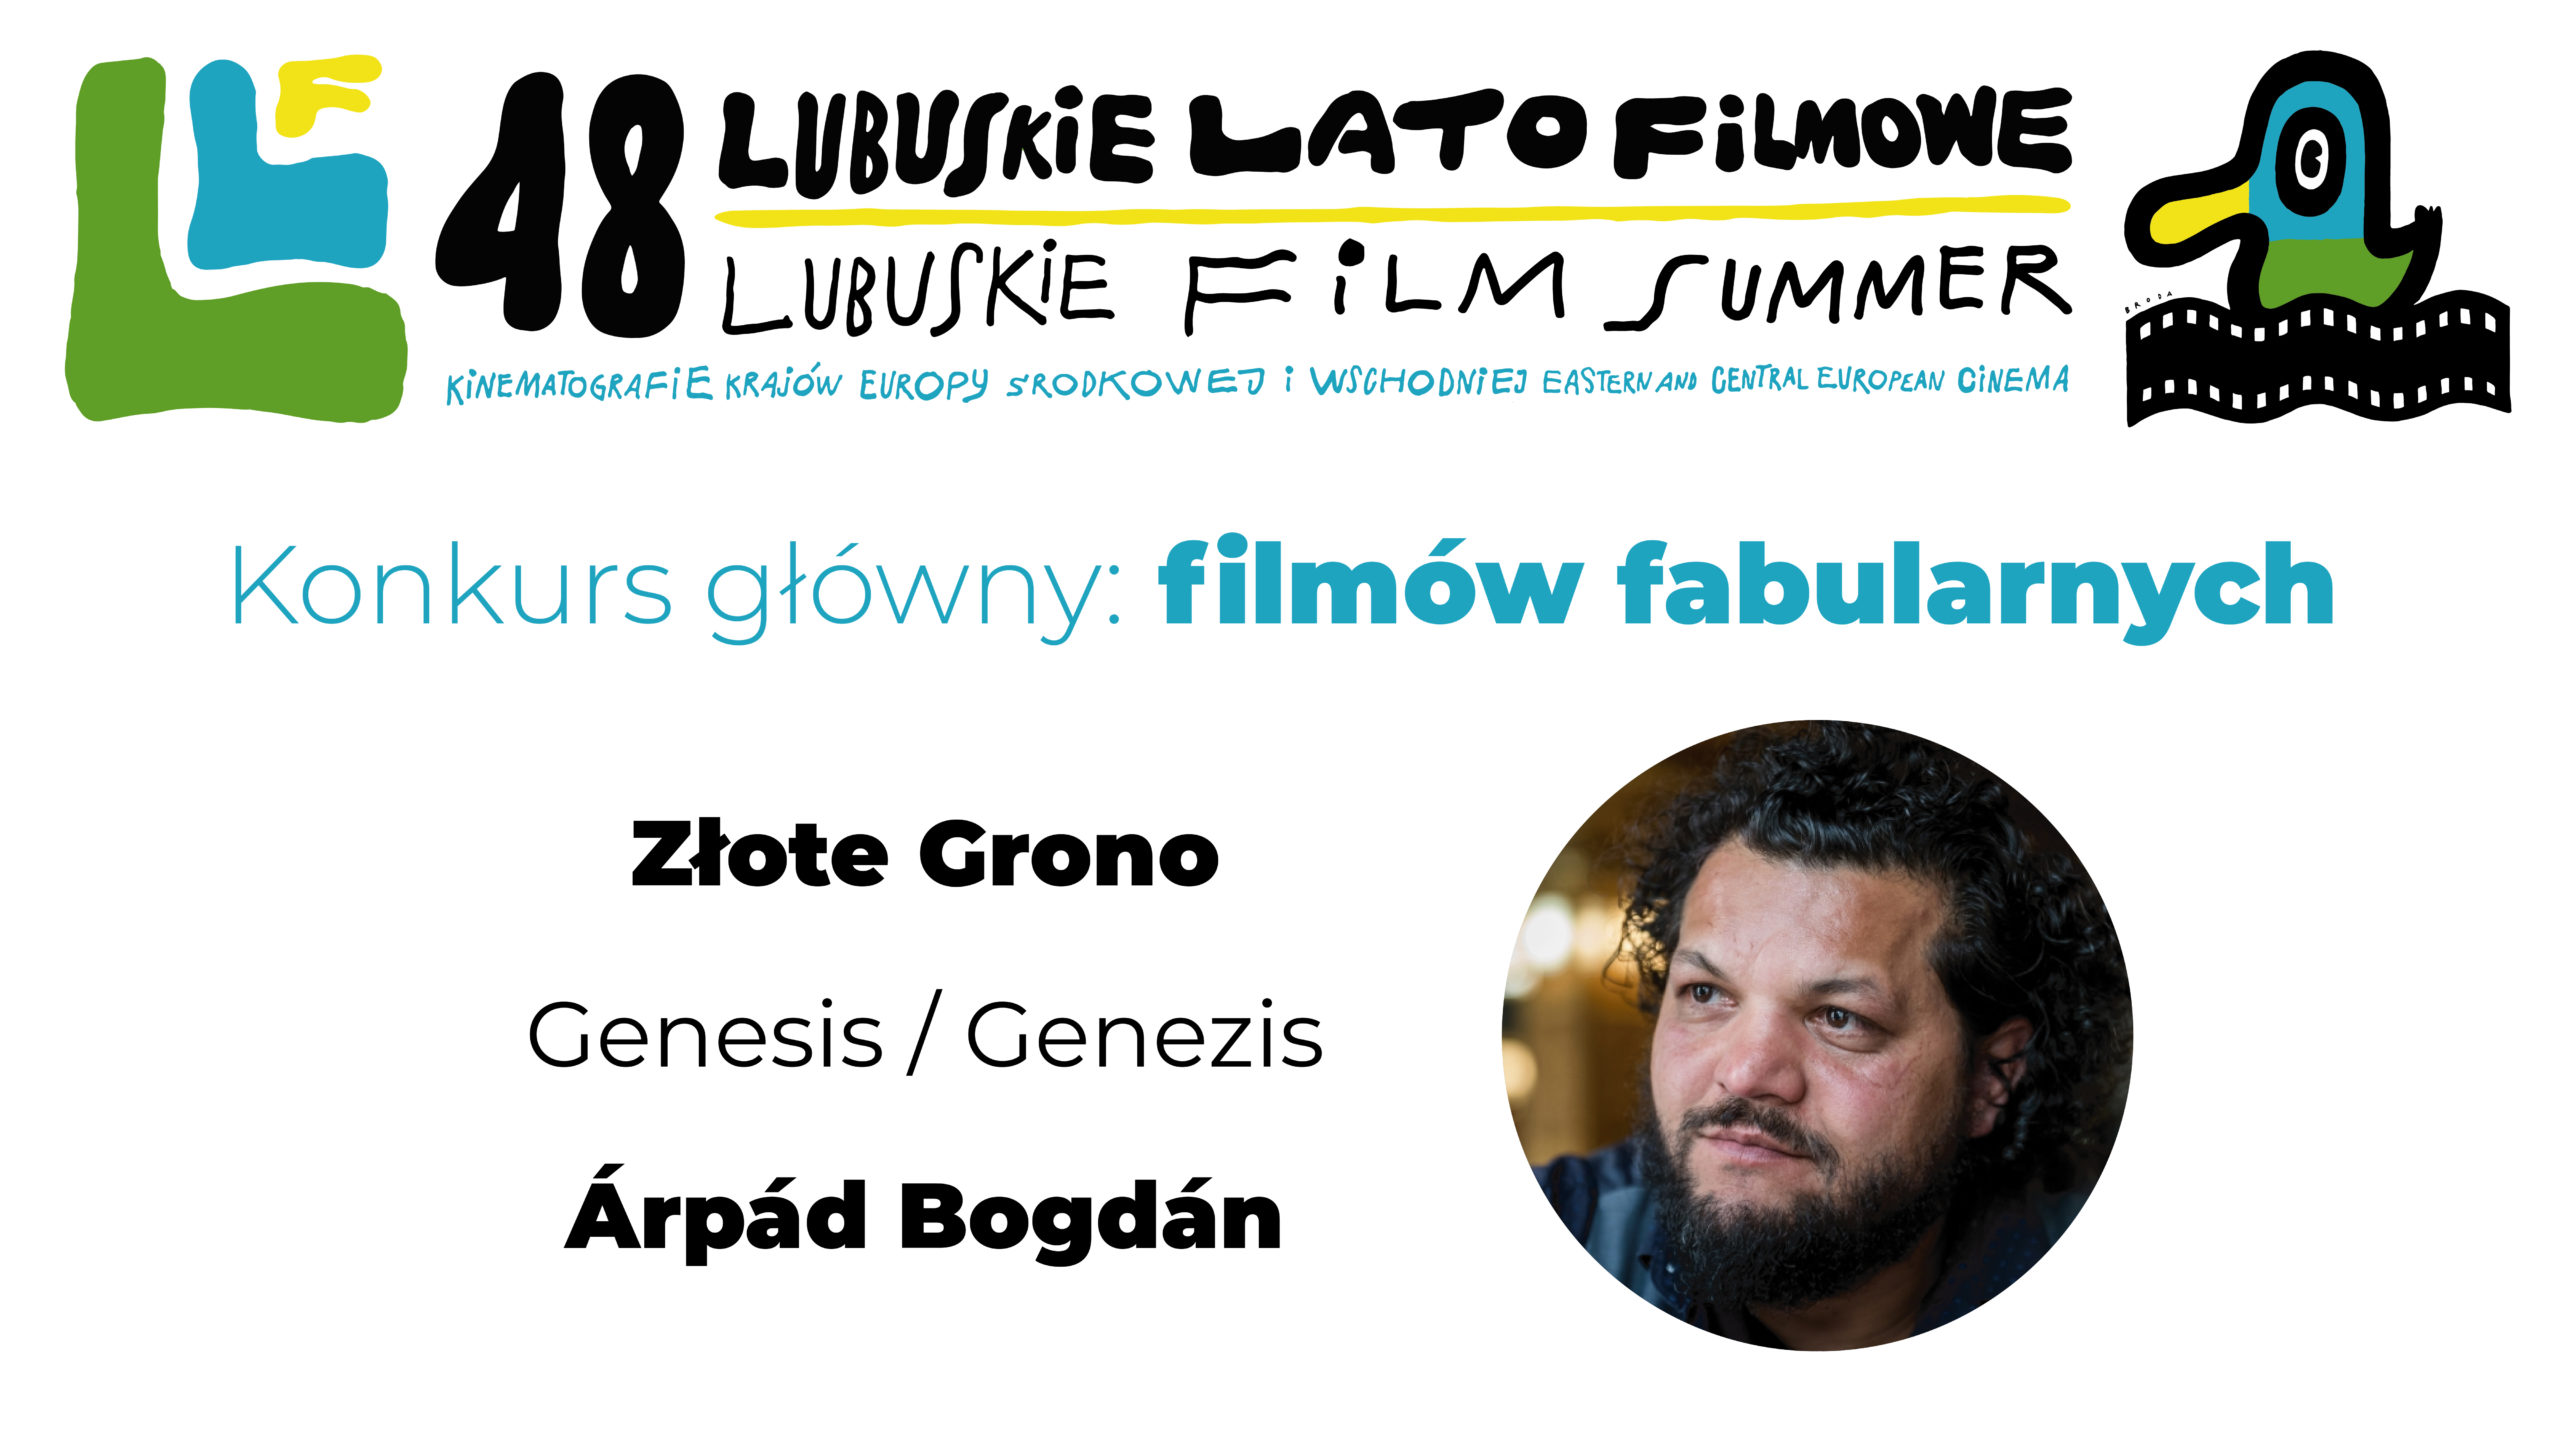 You are currently viewing Werdykt Jury Konkursu Głównego Lubuskiego Lata Filmowego 2019